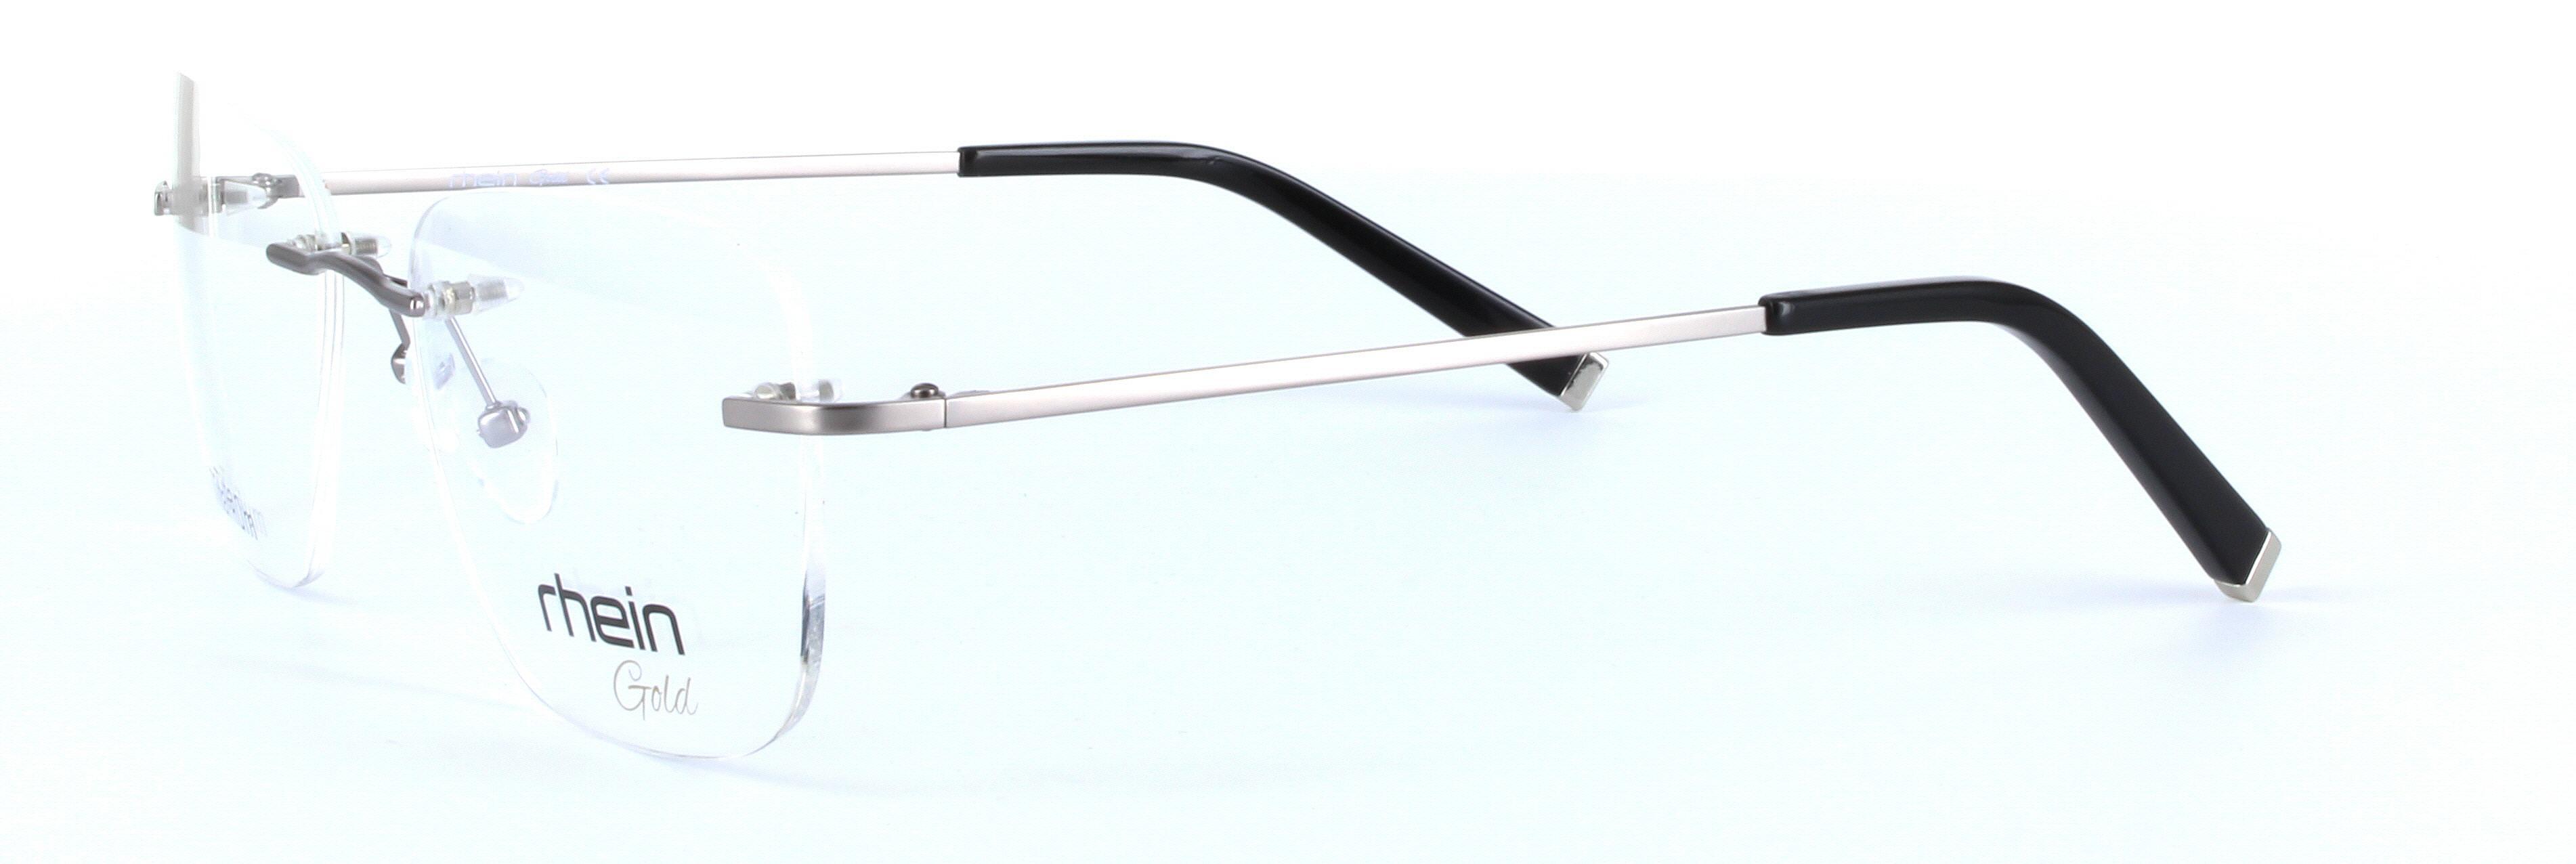 Chandler Titanium Gunmetal Rimless Rectangular Titanium Glasses - Image View 2